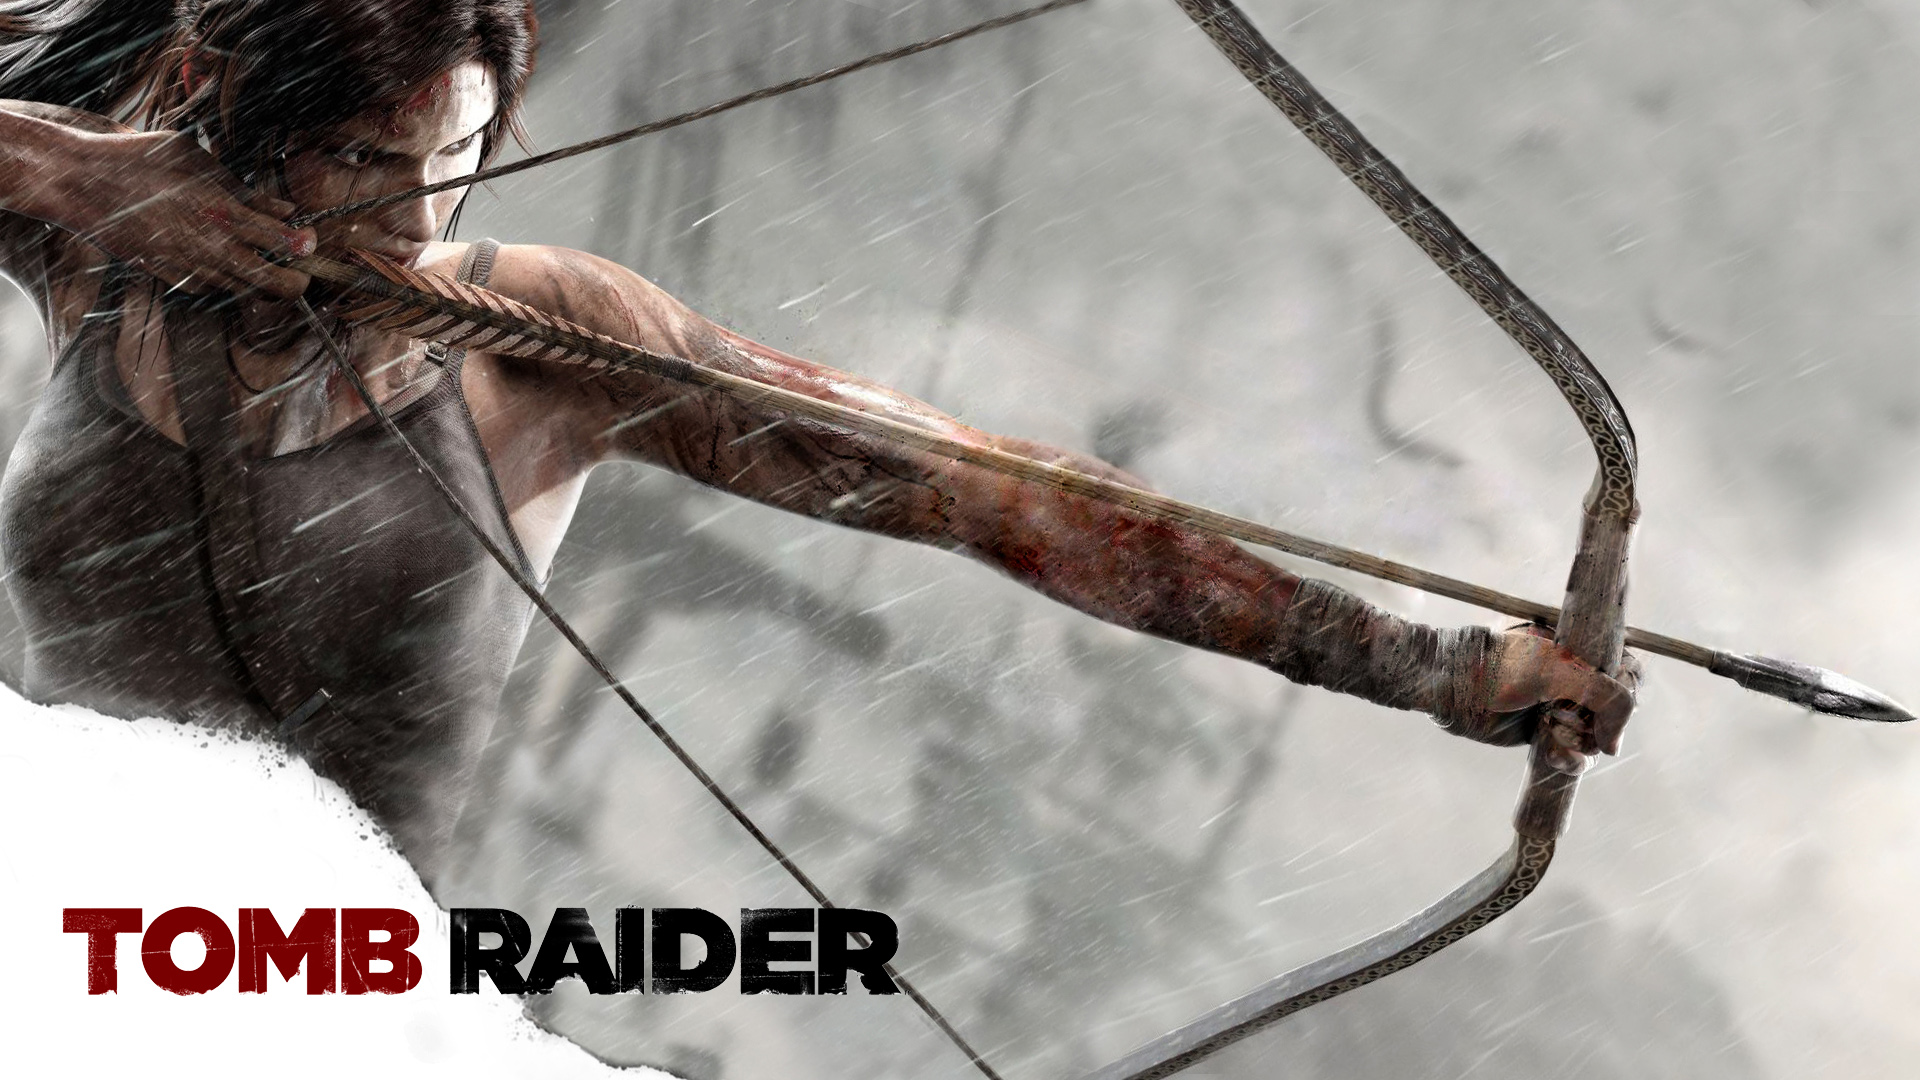 Lara Croft Tomb Raider - Tomb Raider 2013 Wallpaper Hd - 1920x1080 Wallpaper  